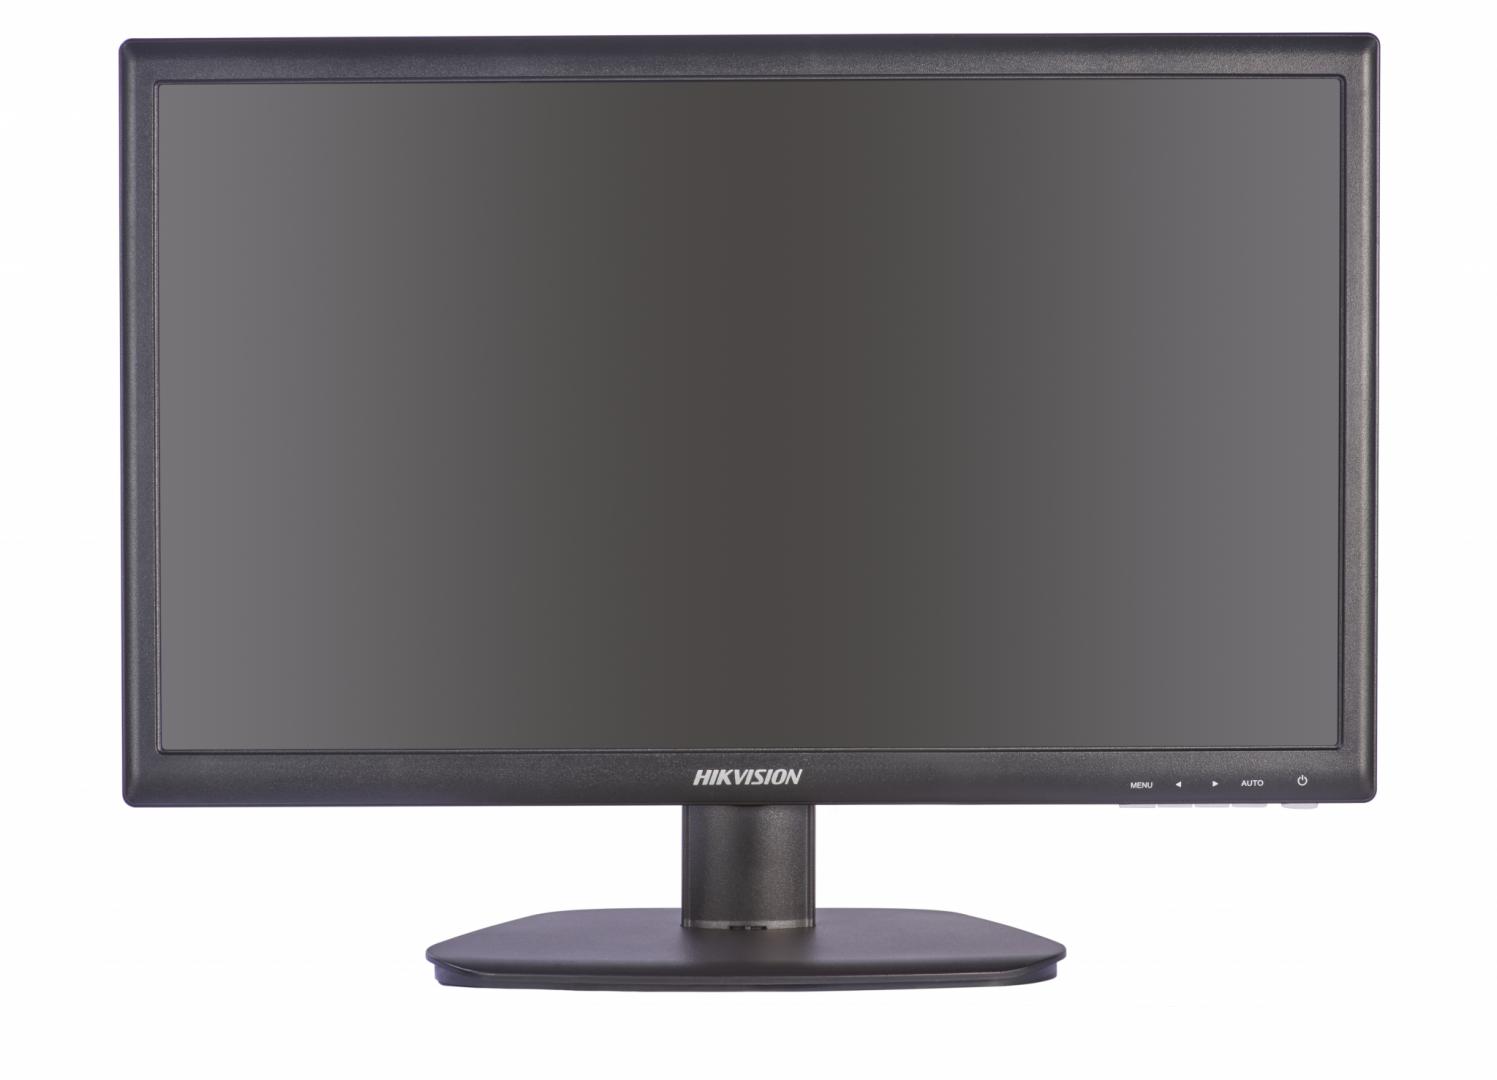 Monitor Hikvision DS-D5024FC 23.6" LED backlit, Full HD,  VESA stand bracket